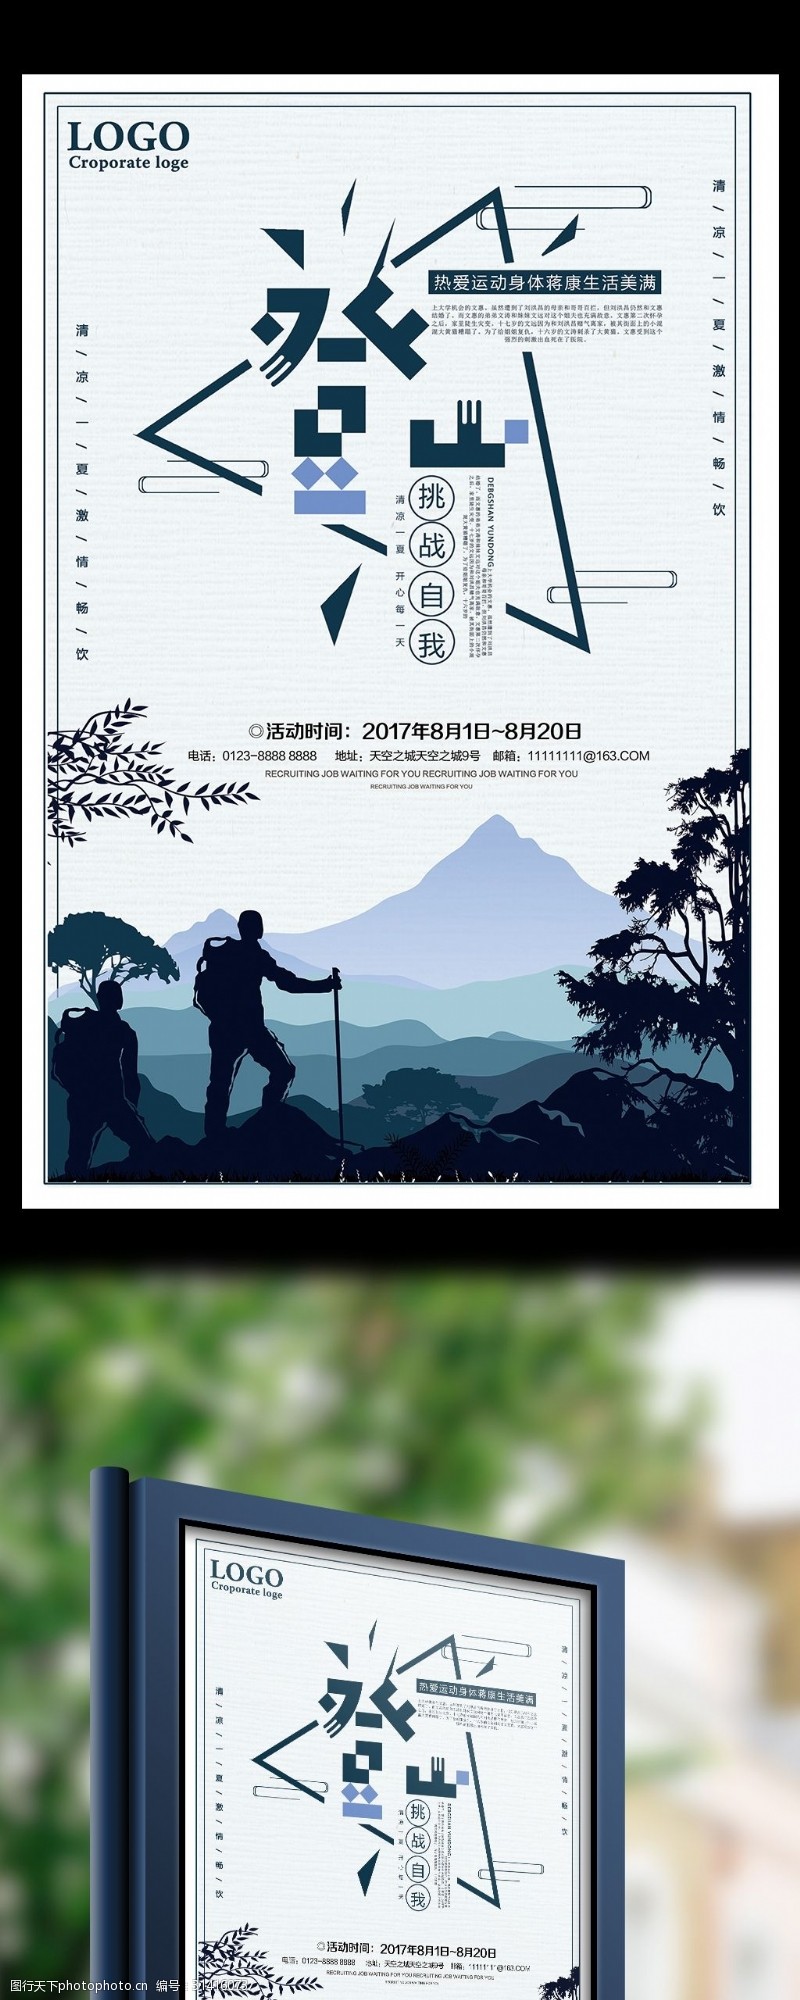 徒步登山登山运动挑战自我宣传海报设计